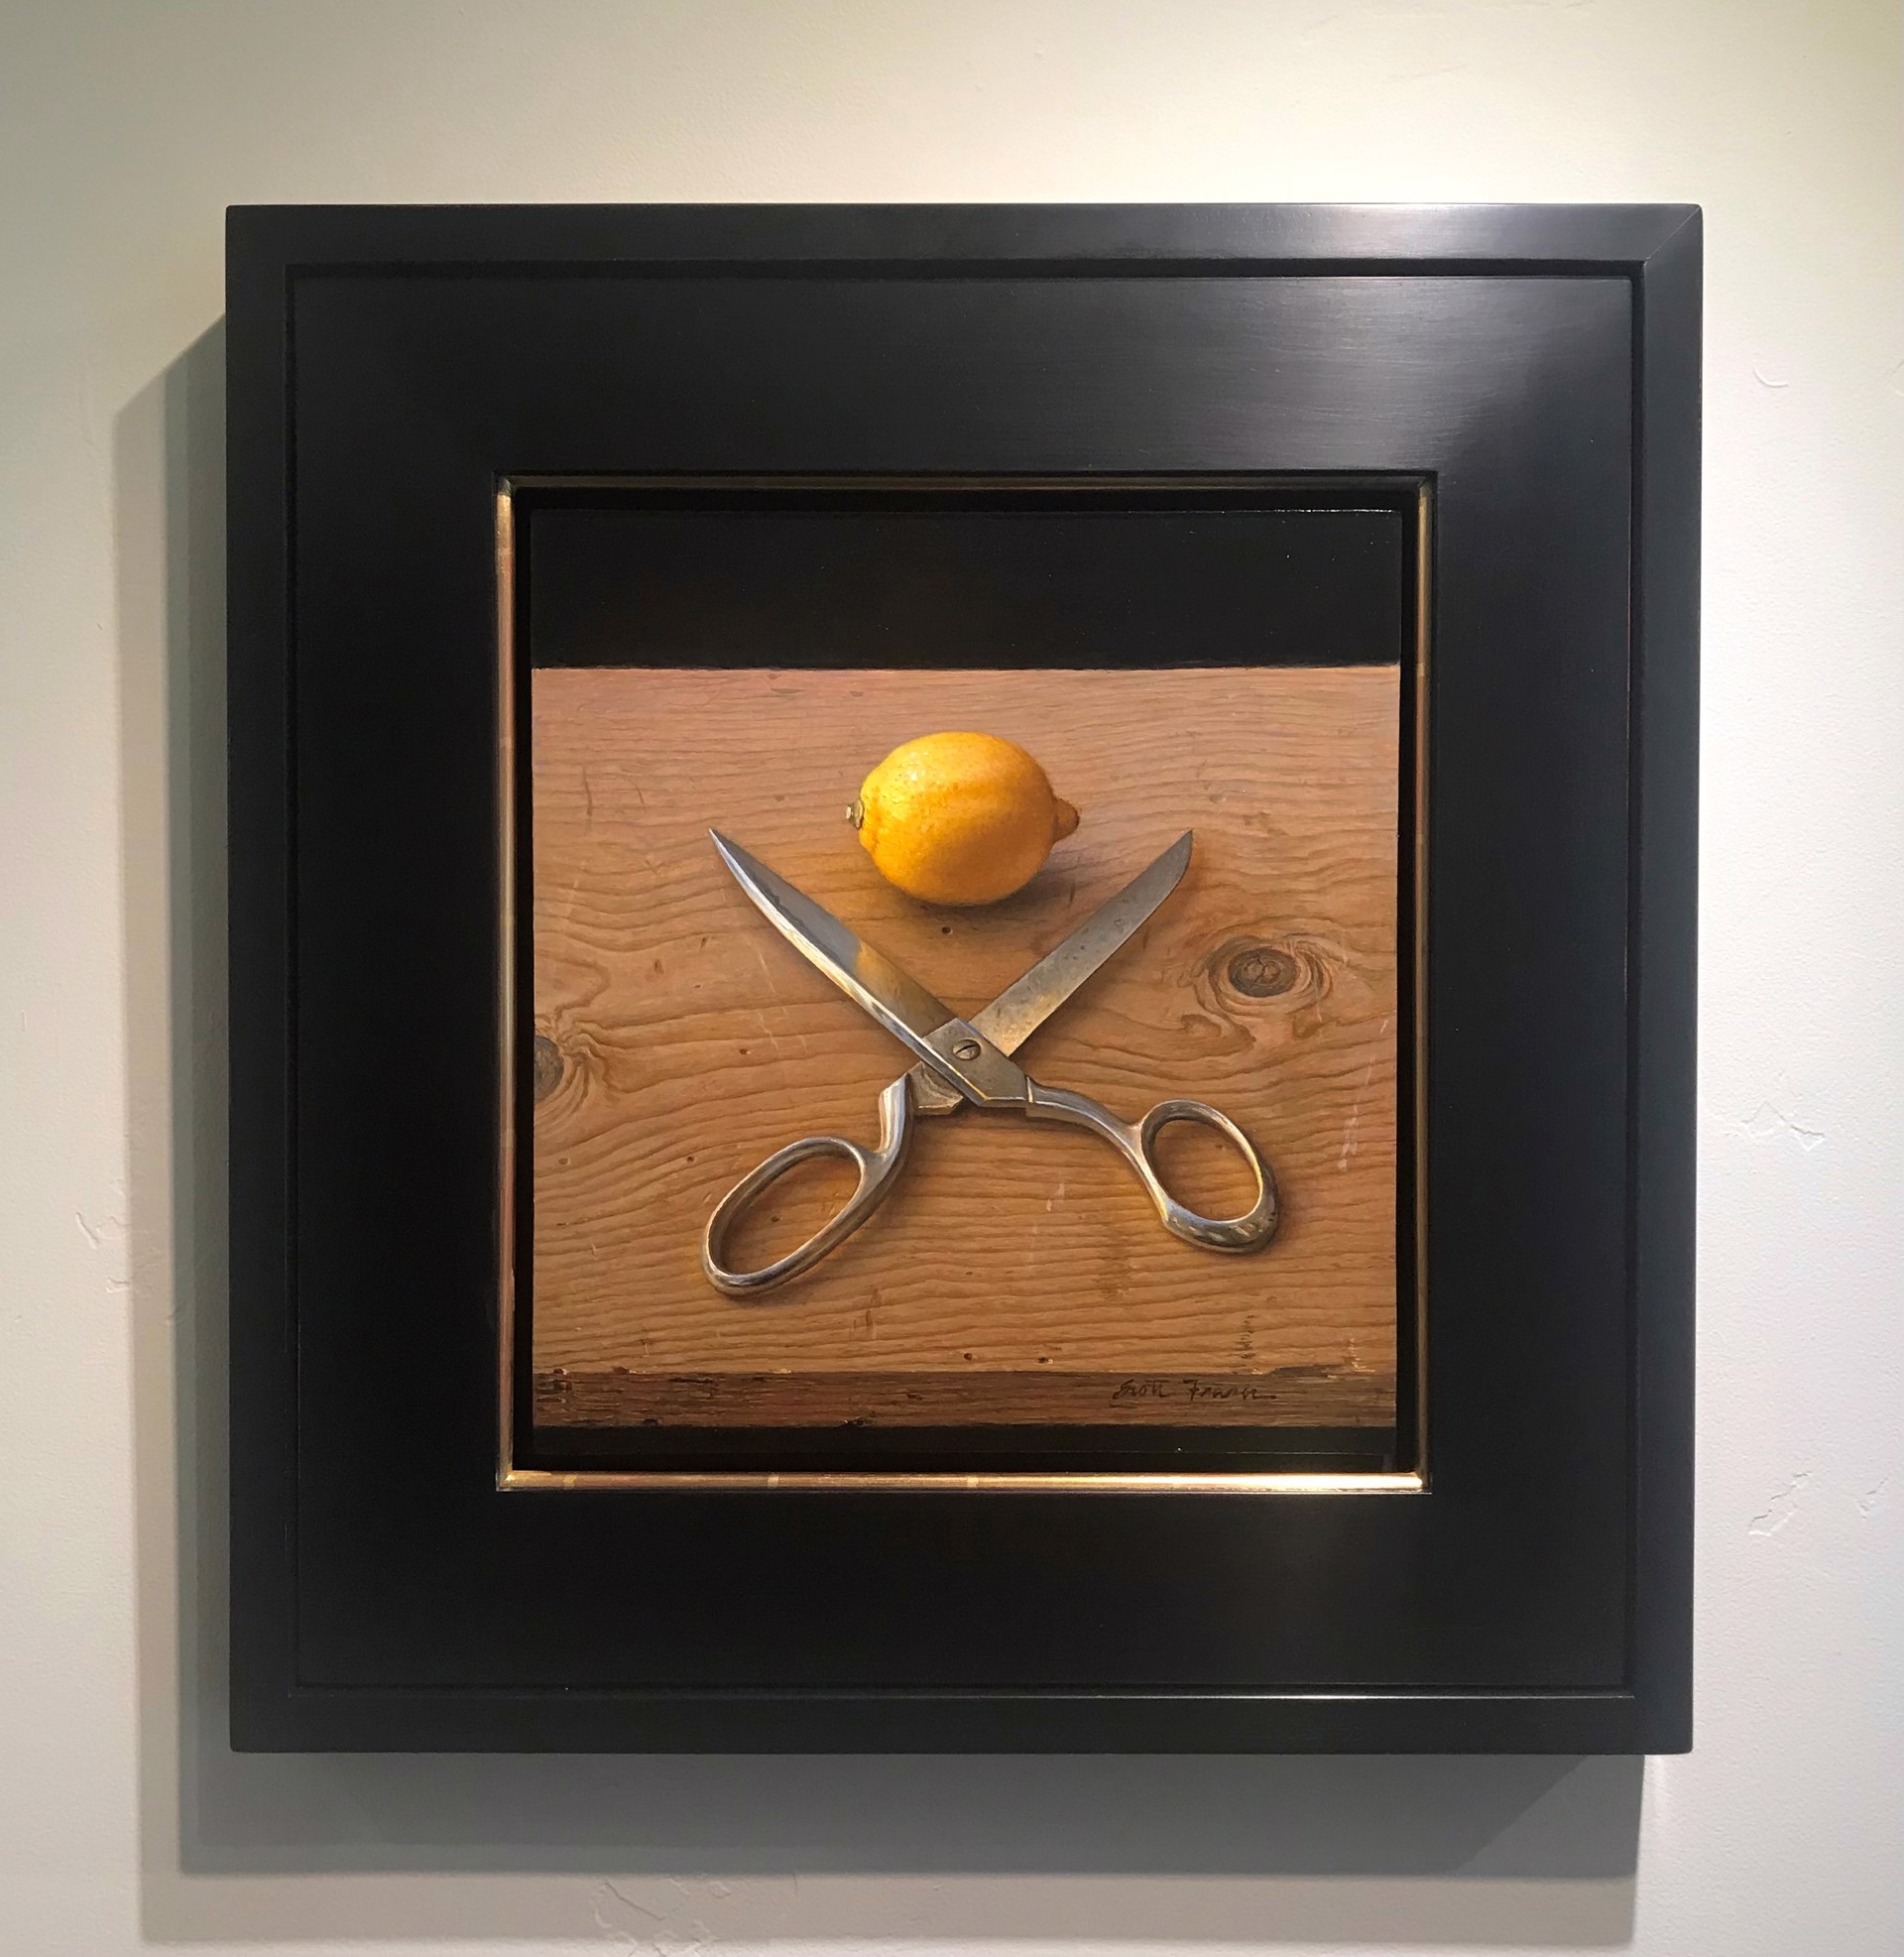 Lemon and Scissors by Scott Fraser